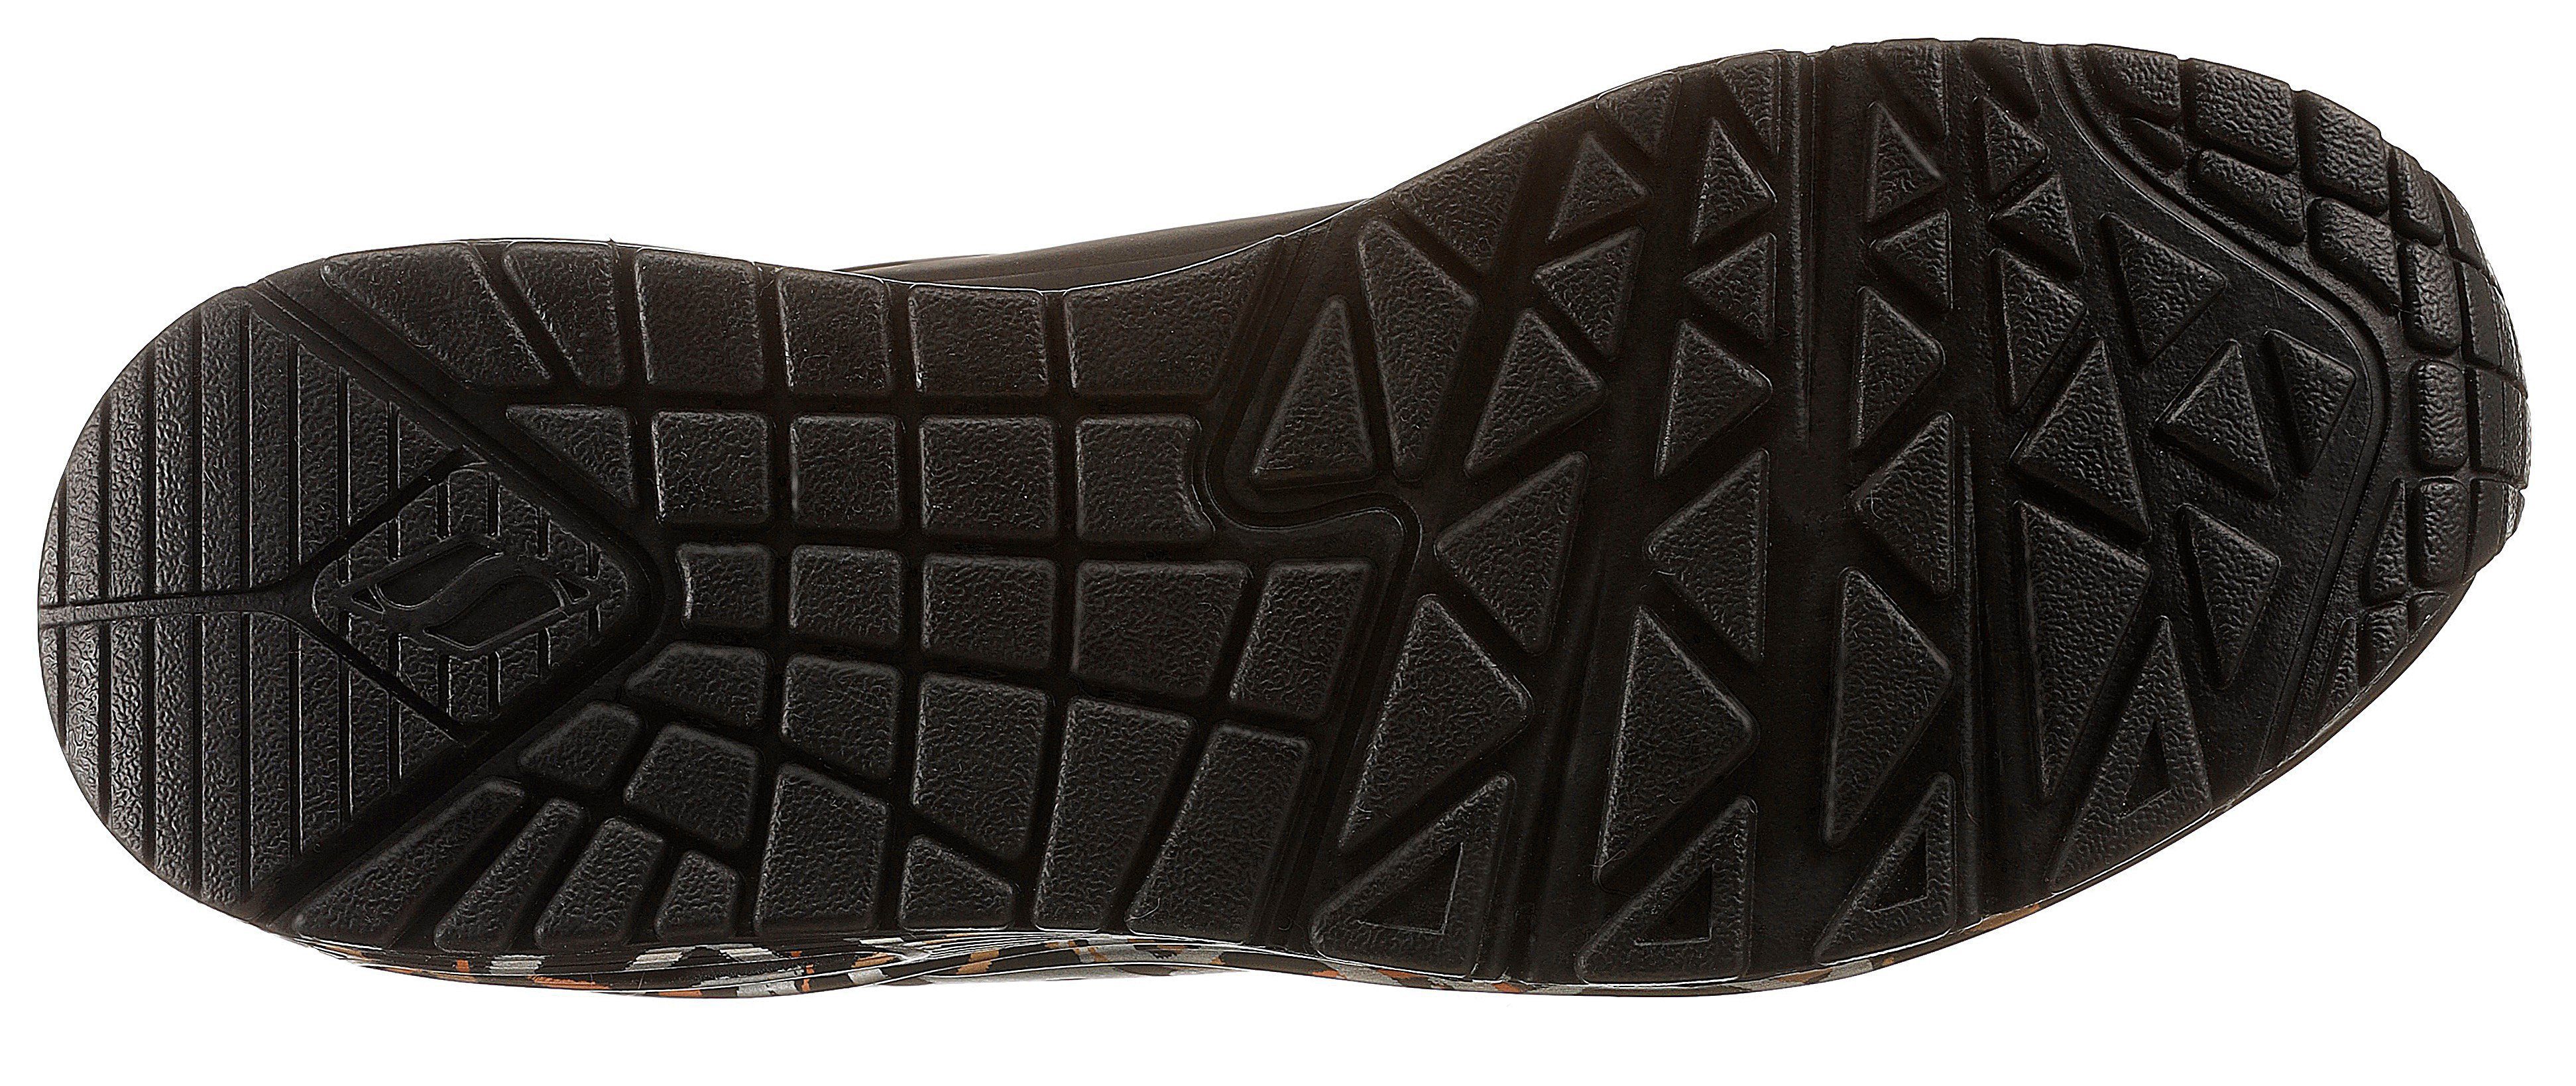 METALLIC - Metallic-Print LOVE trendigen schwarz Skechers mit UNO Sneaker